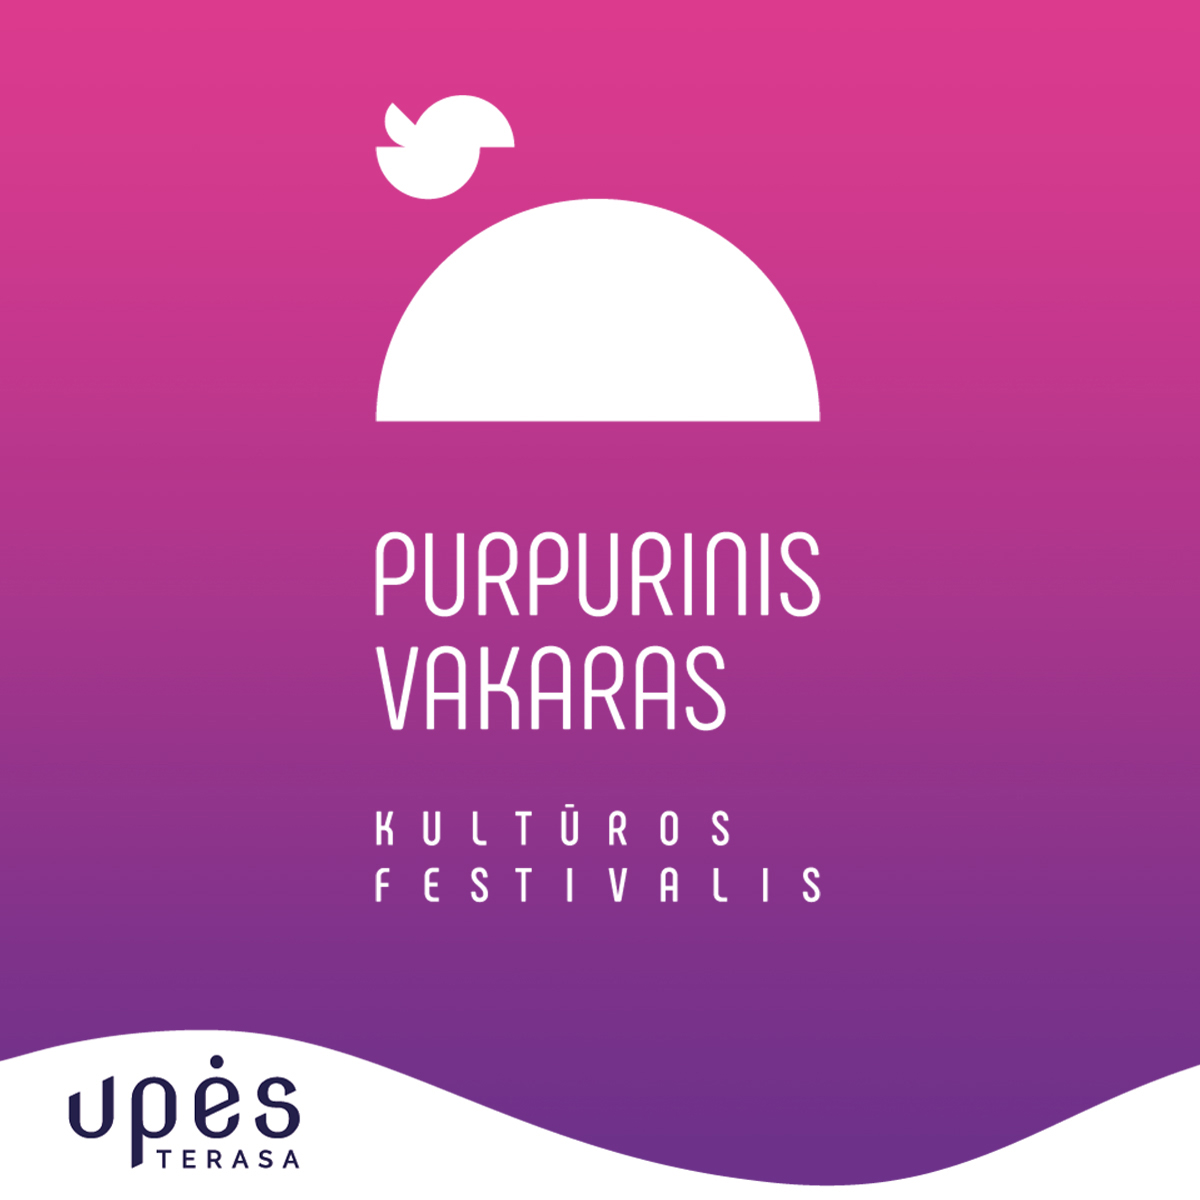 Rugpiūčio 11 d. Upės terasoje įžanginis kultūros festivalio „Purpurinis vakaras“ koncertas